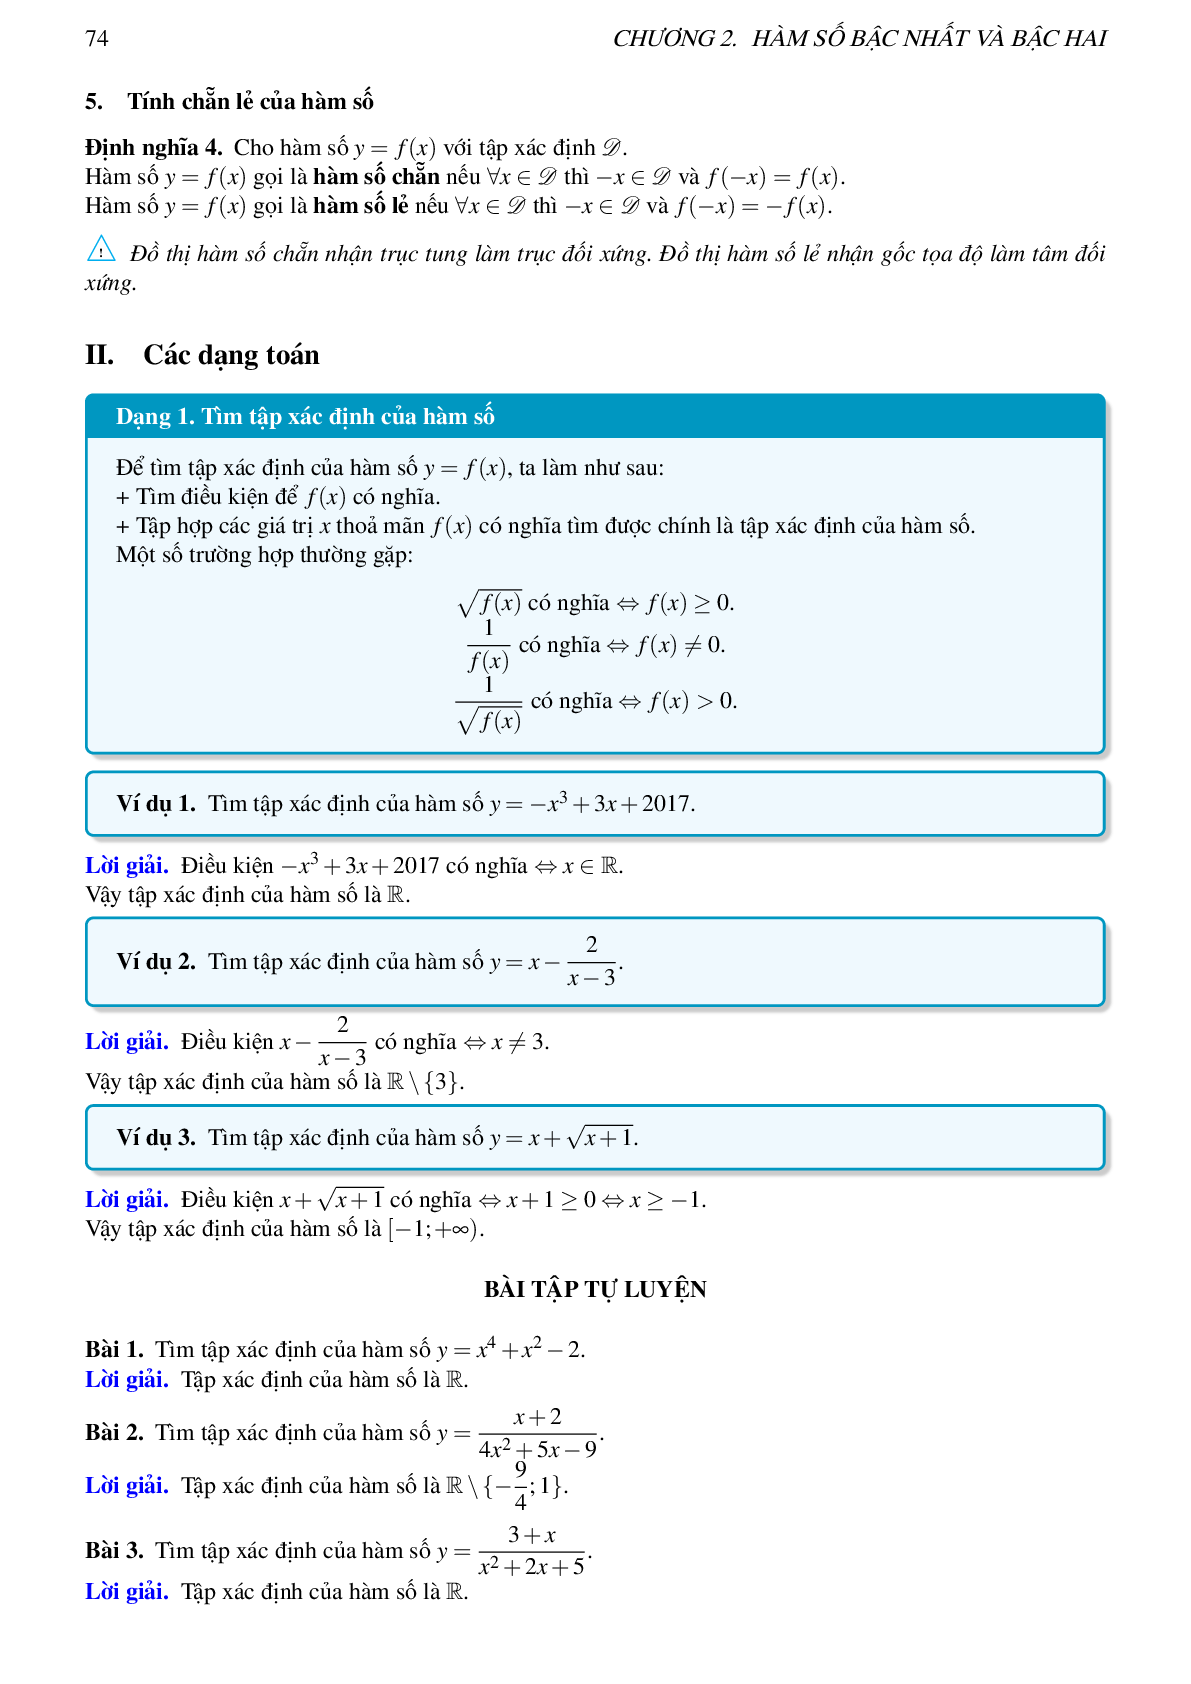 Lý thuyết, các dạng toán và bài tập về hàm số bậc nhất và bậc hai (trang 2)